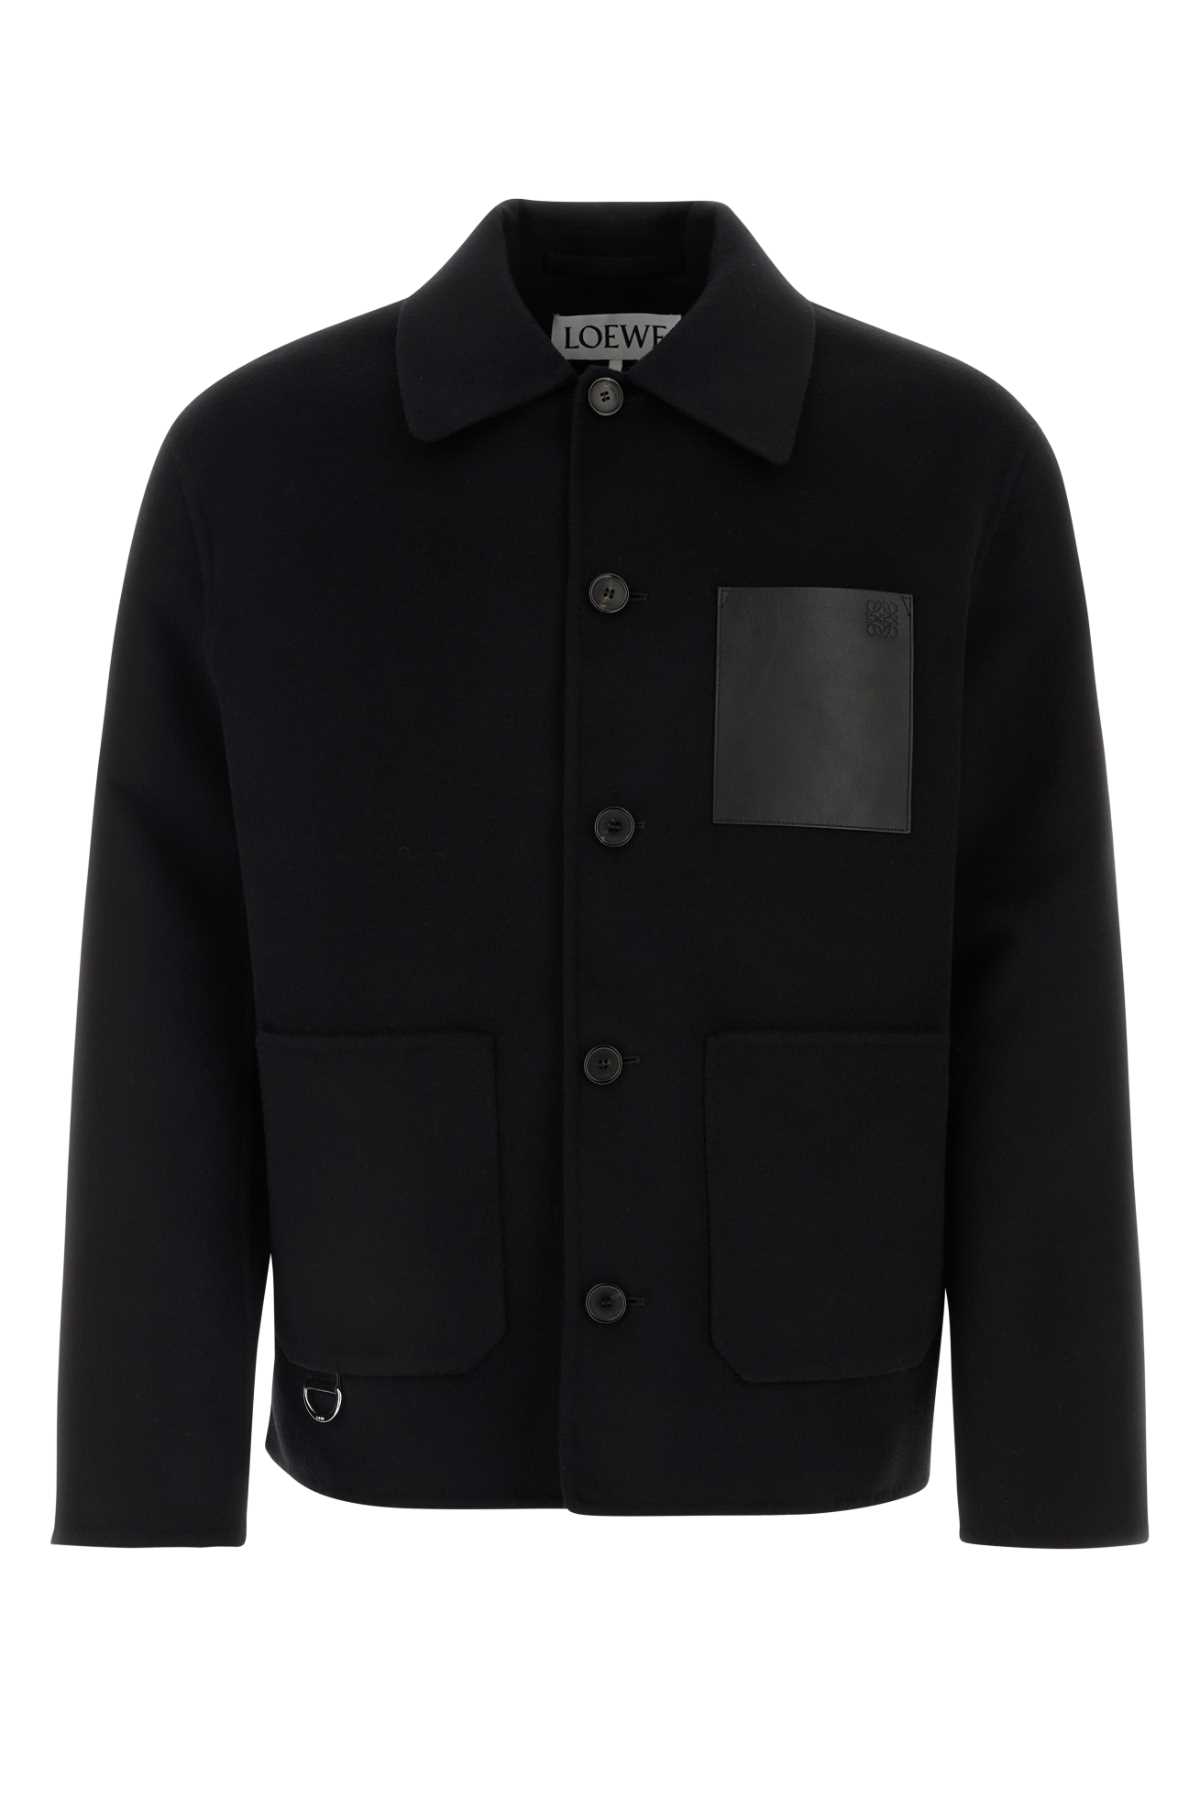 Loewe Black Wool Blend Jacket